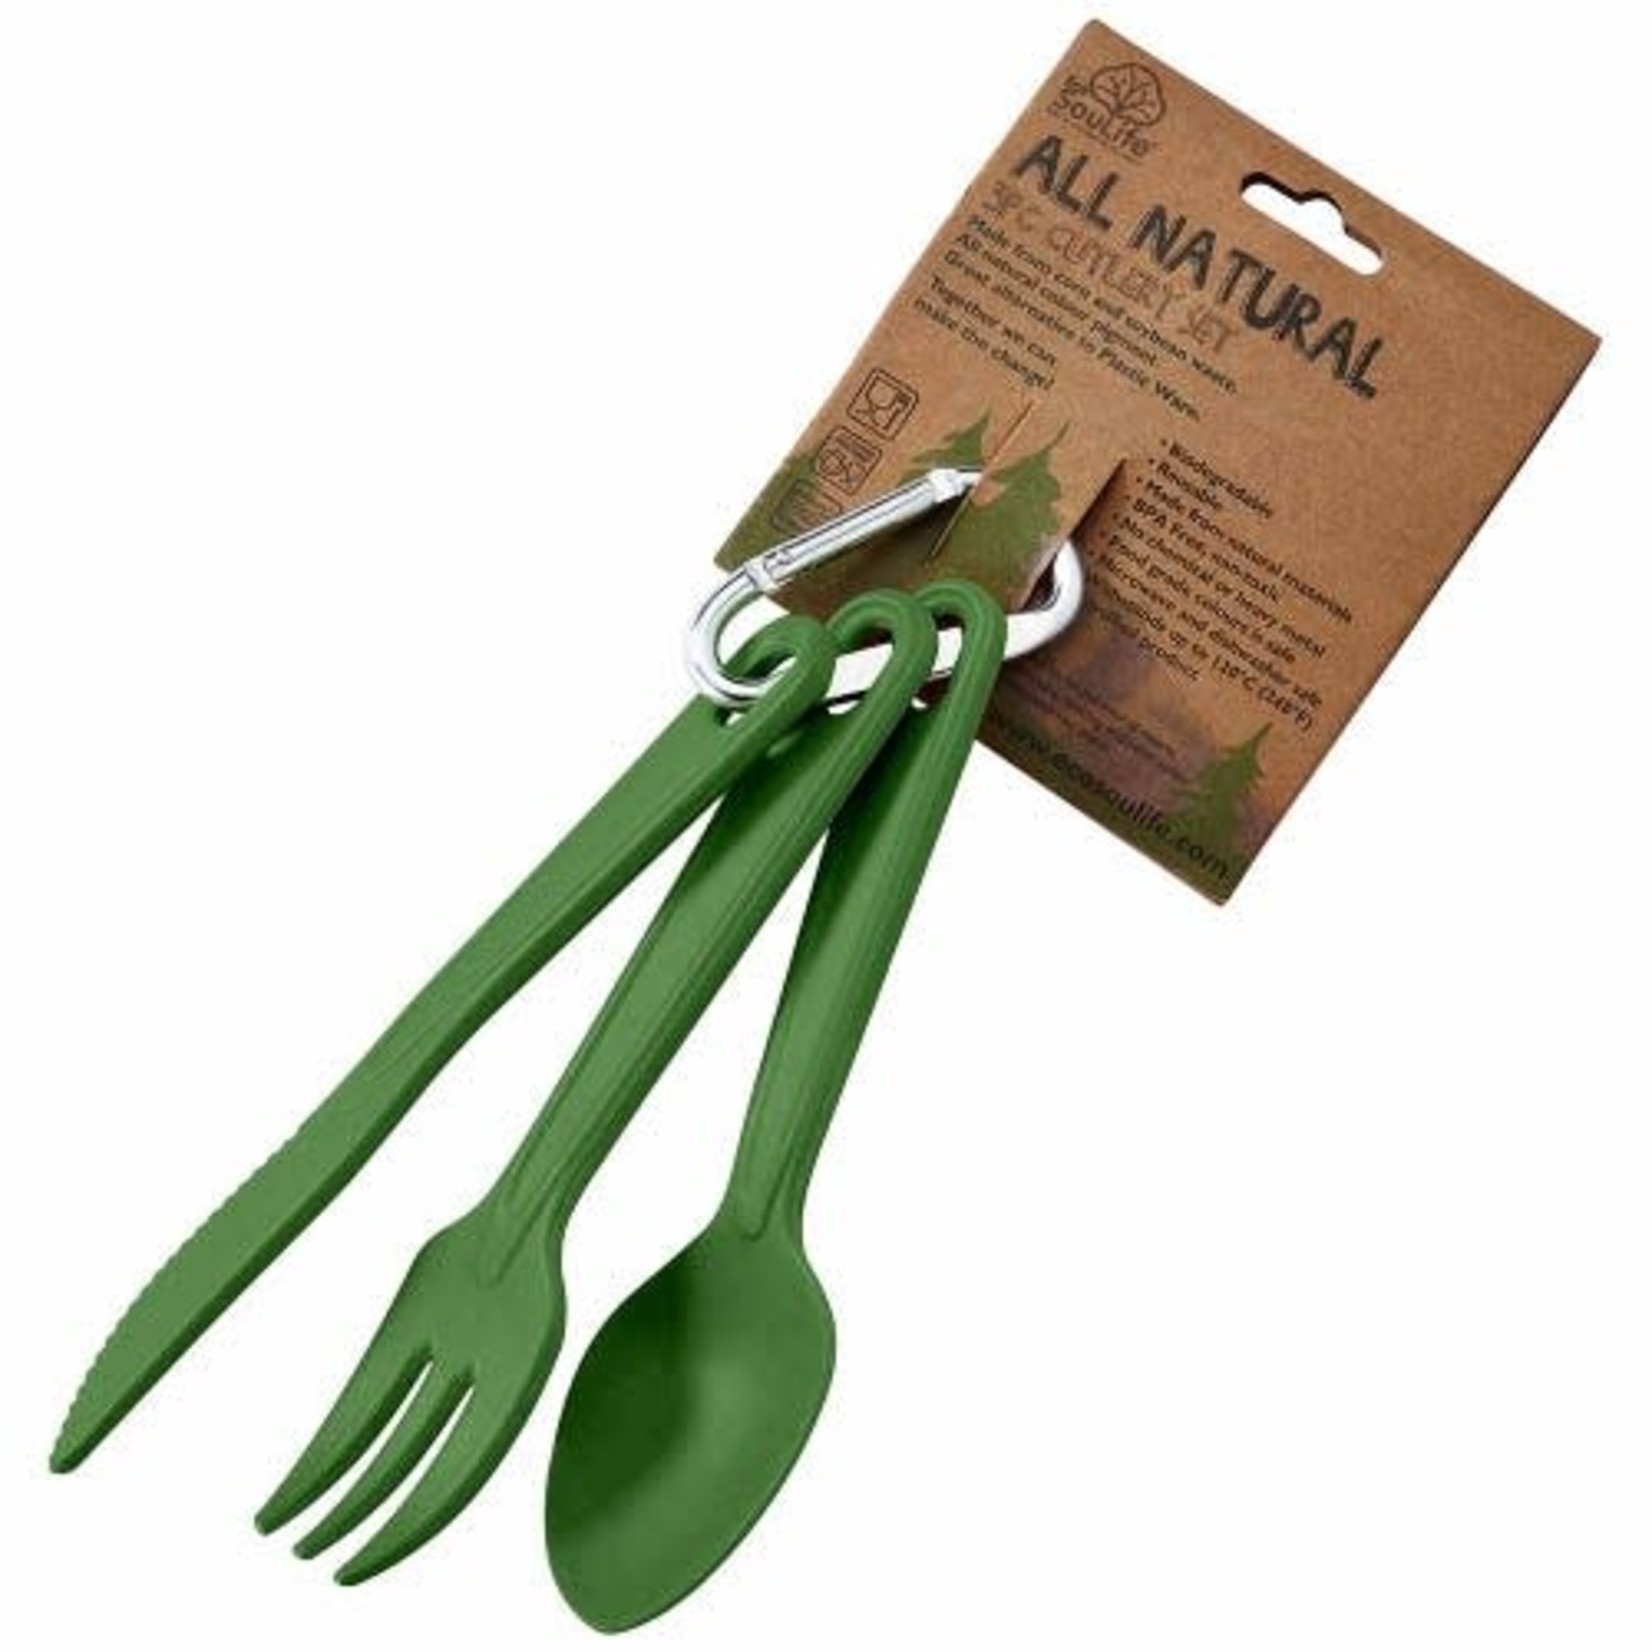 EcoSoulife EcoSoulife 3pk Cutlery Set